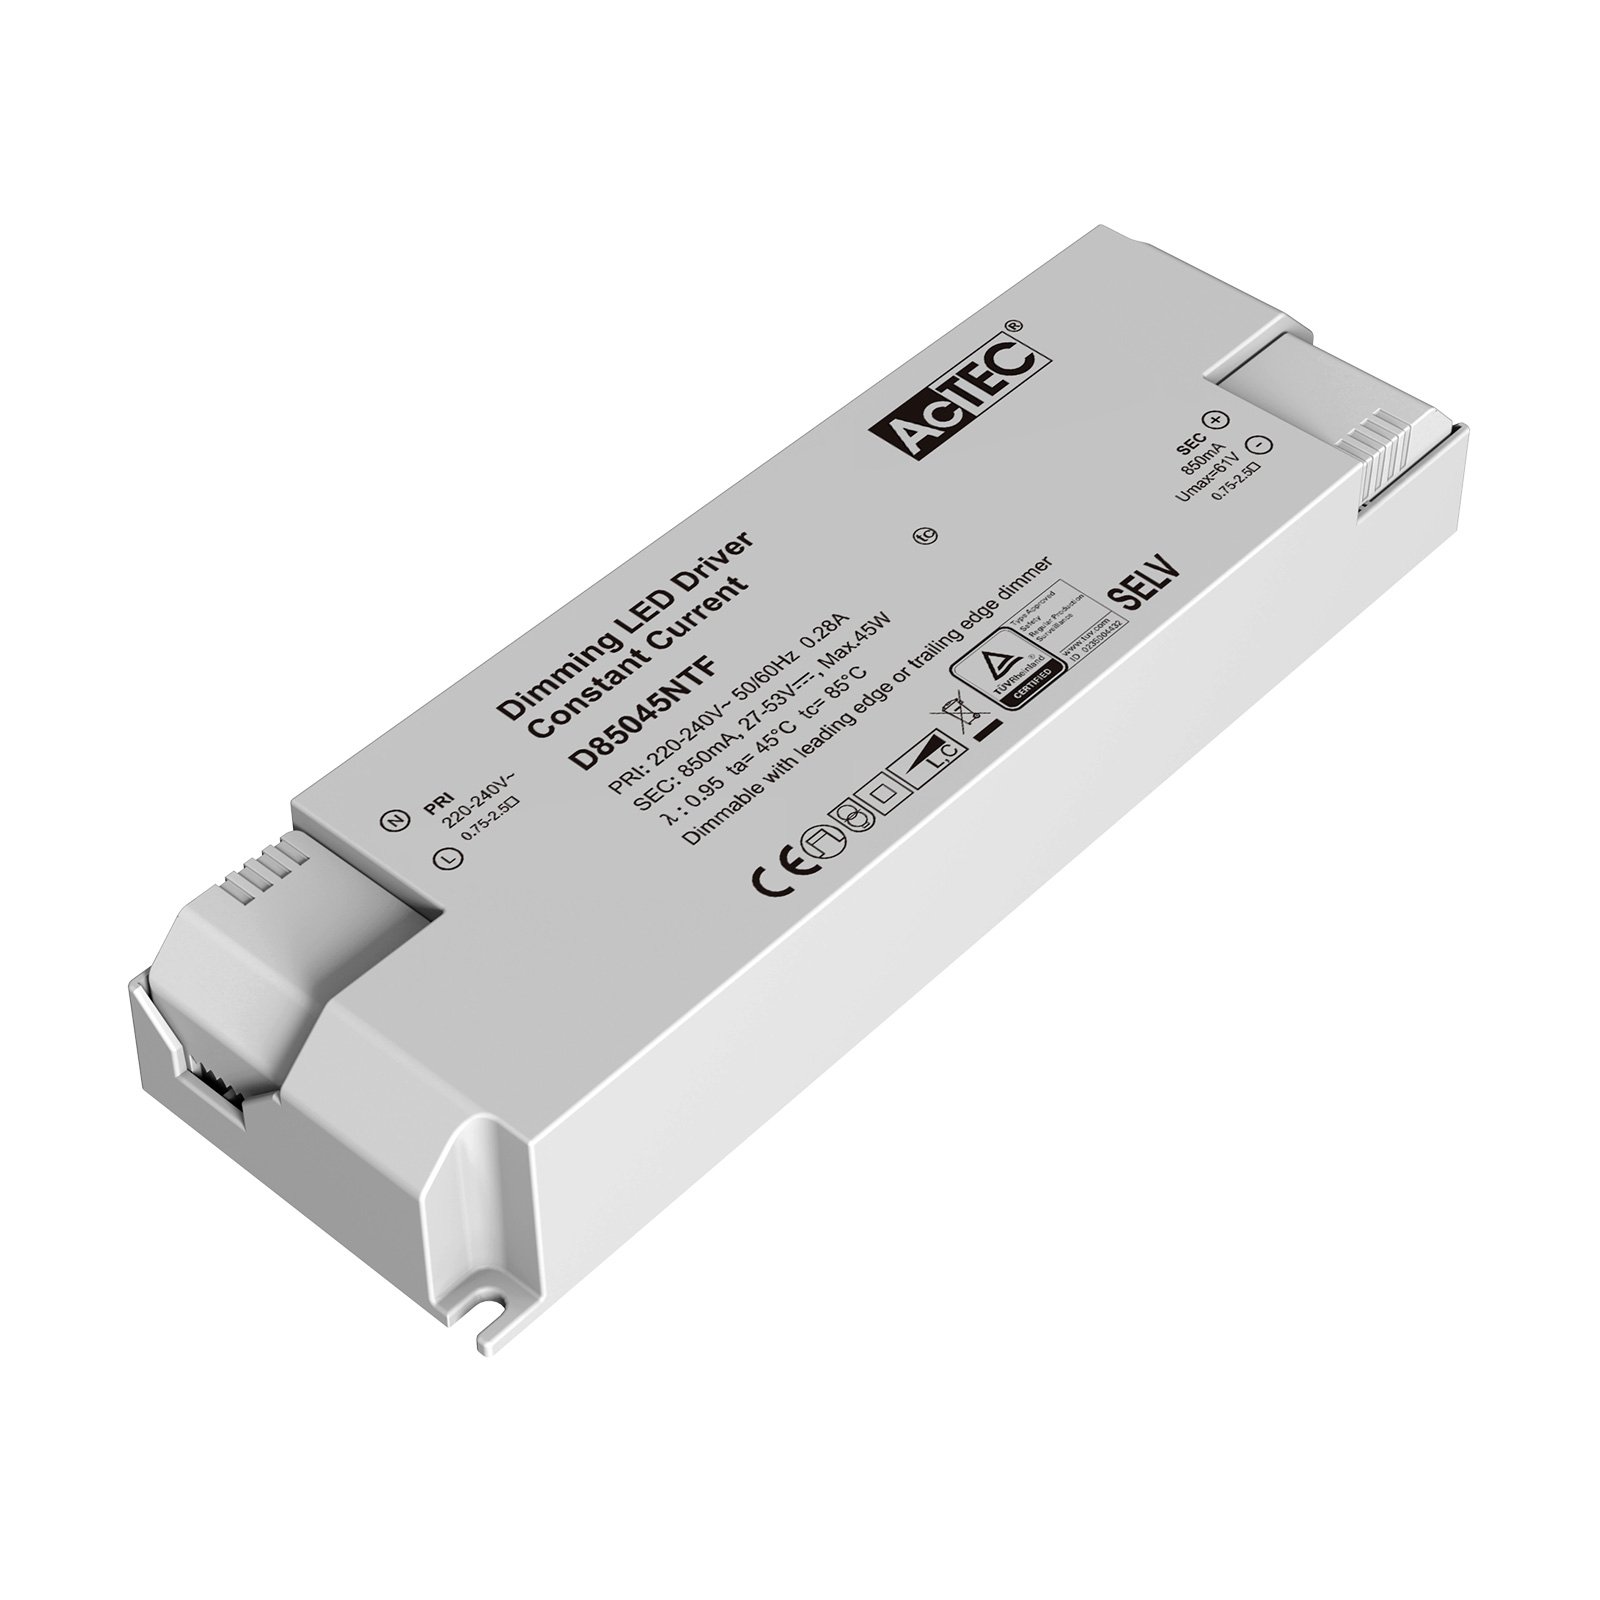 AcTEC Triac driver LED CC max. 45W 850mA